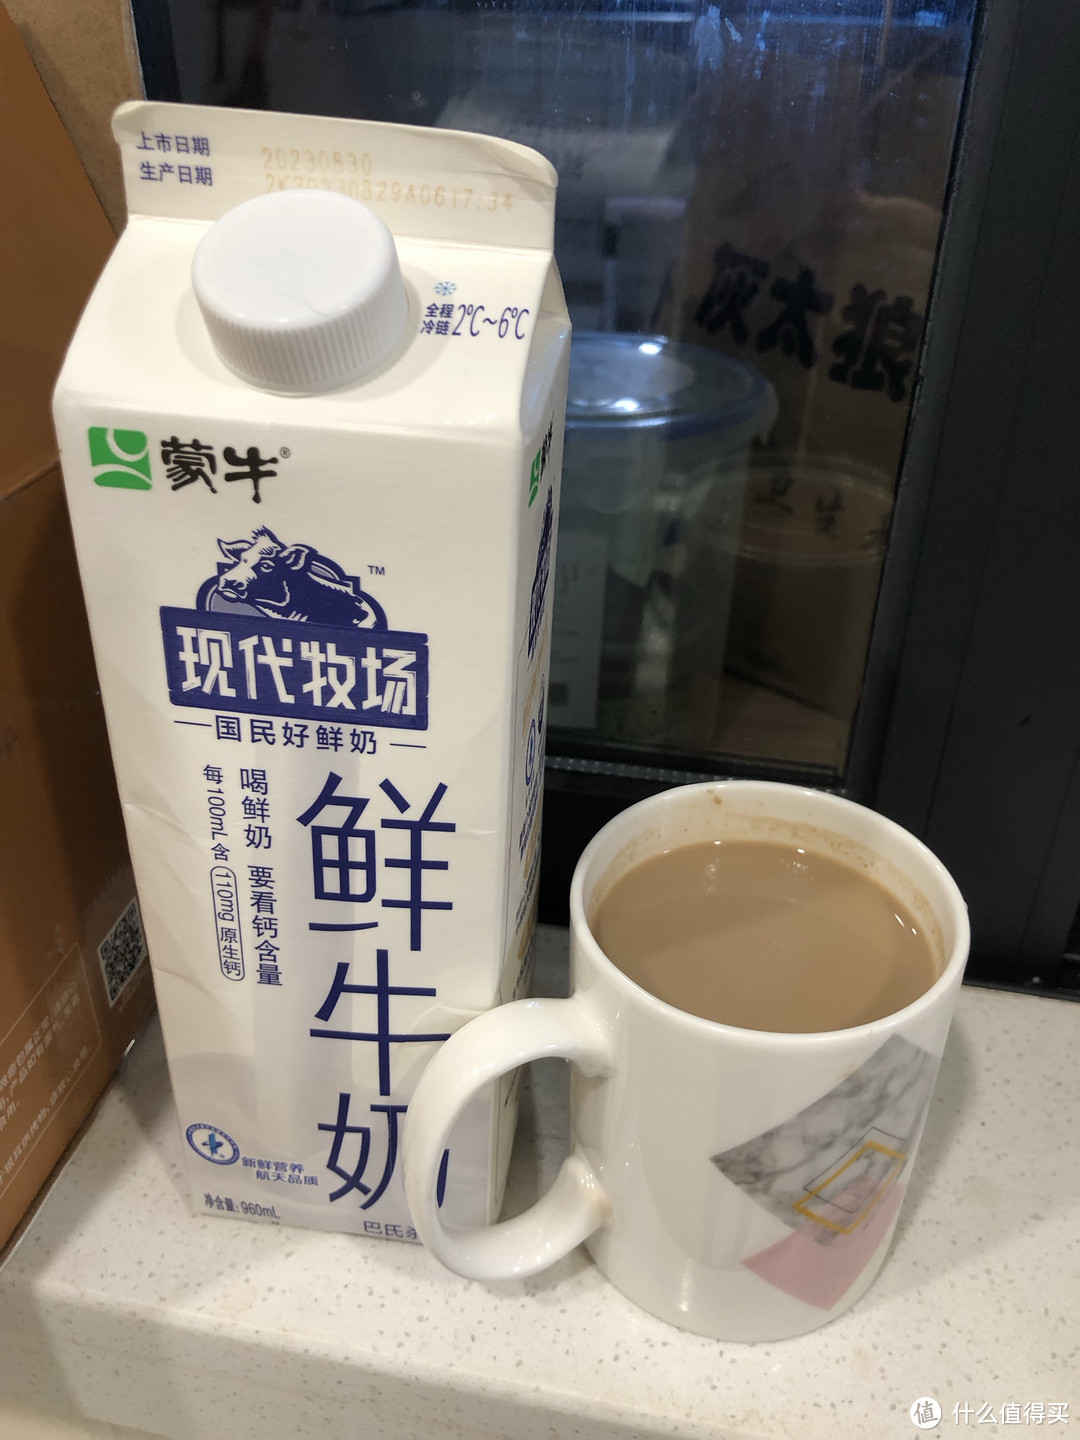 鲜牛奶和常温奶，到底哪种更好？今天你喝什么奶了？